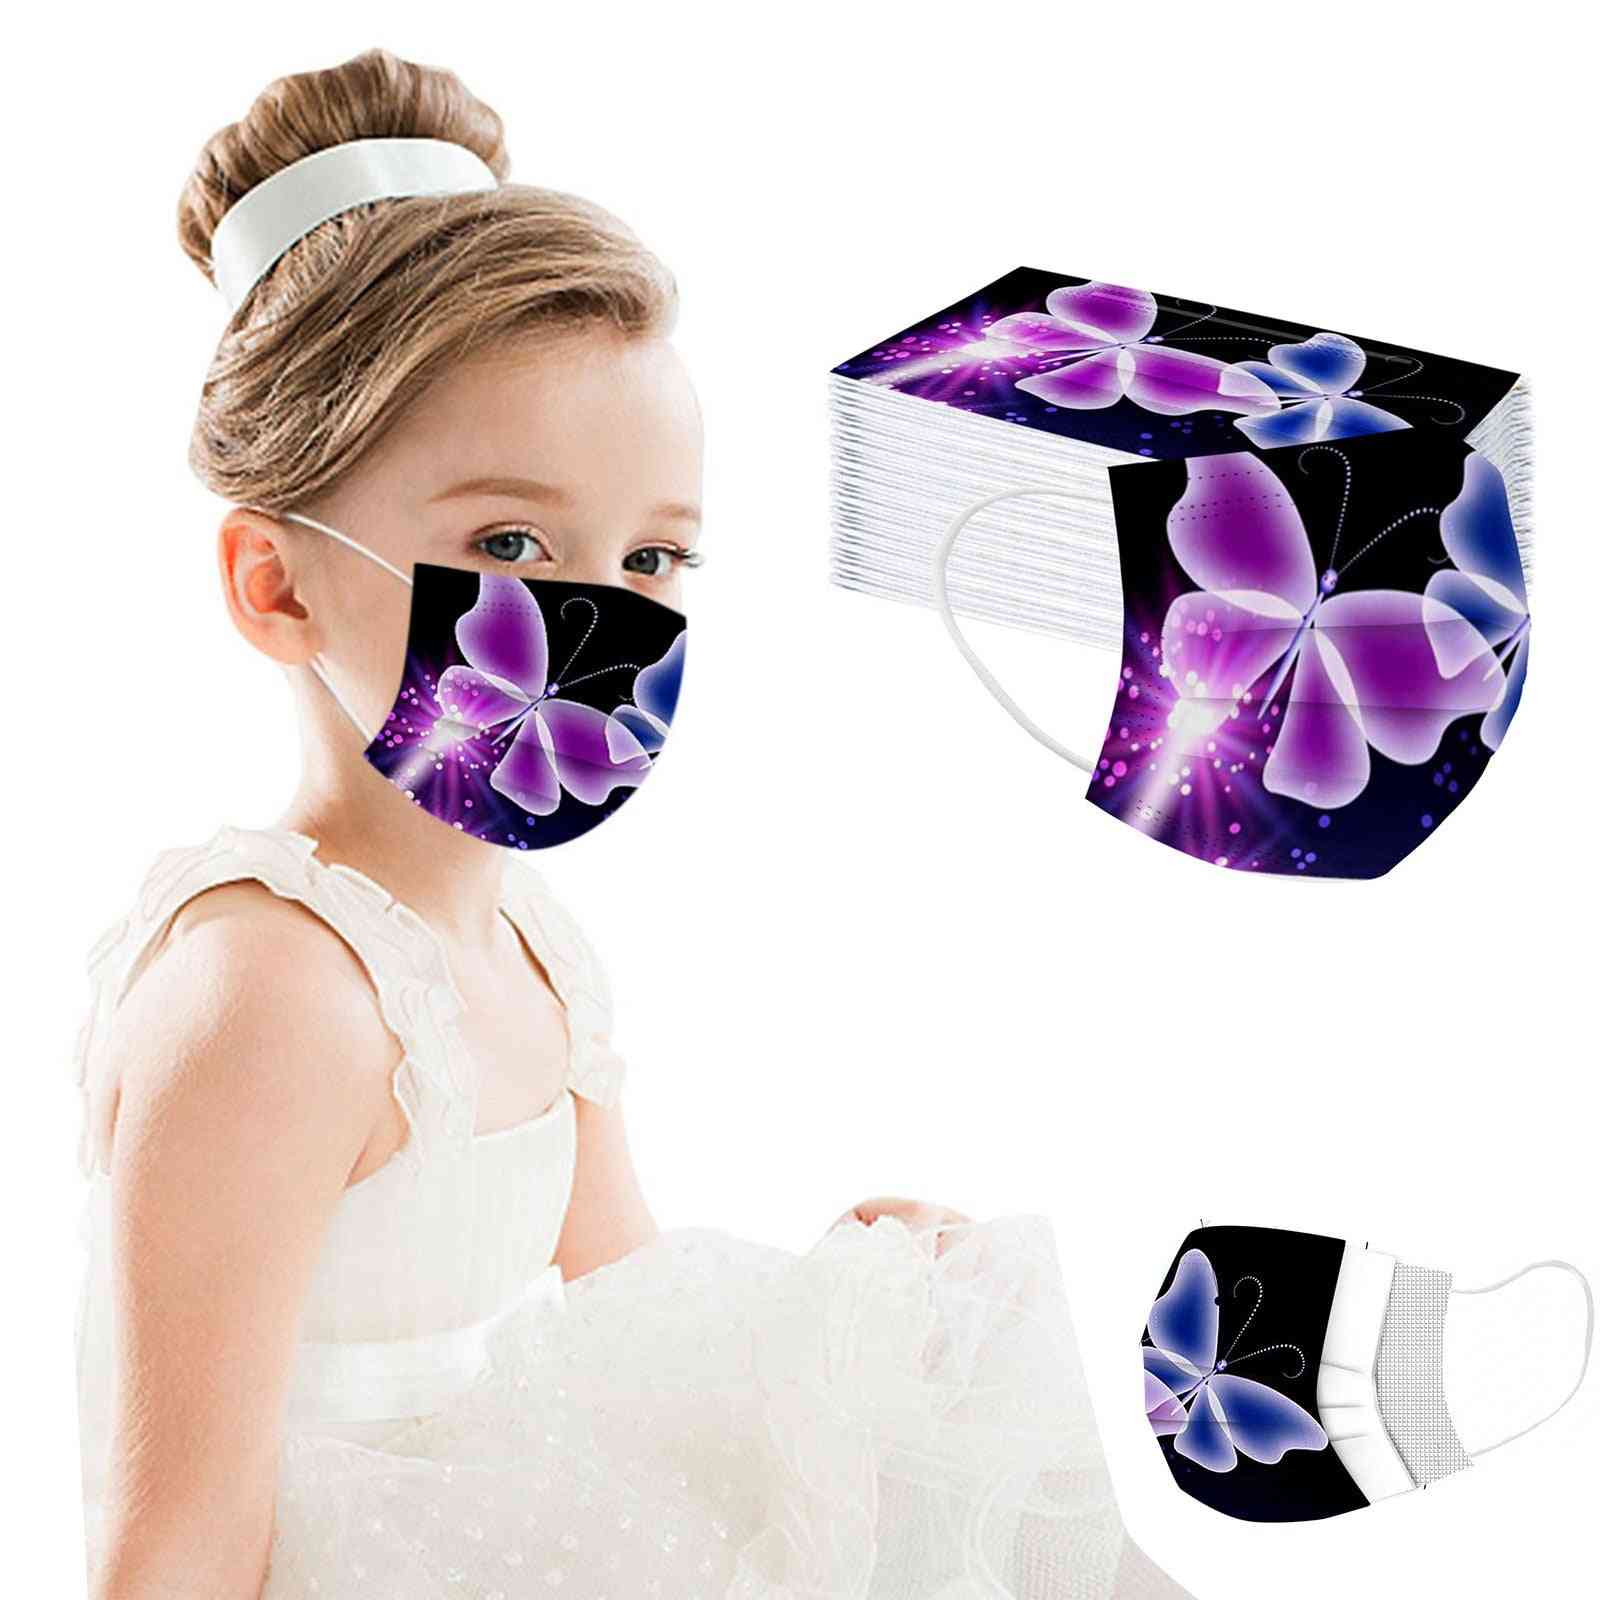 Masques buccaux personnels jetables pour enfants en tissu non tissé 3 couches